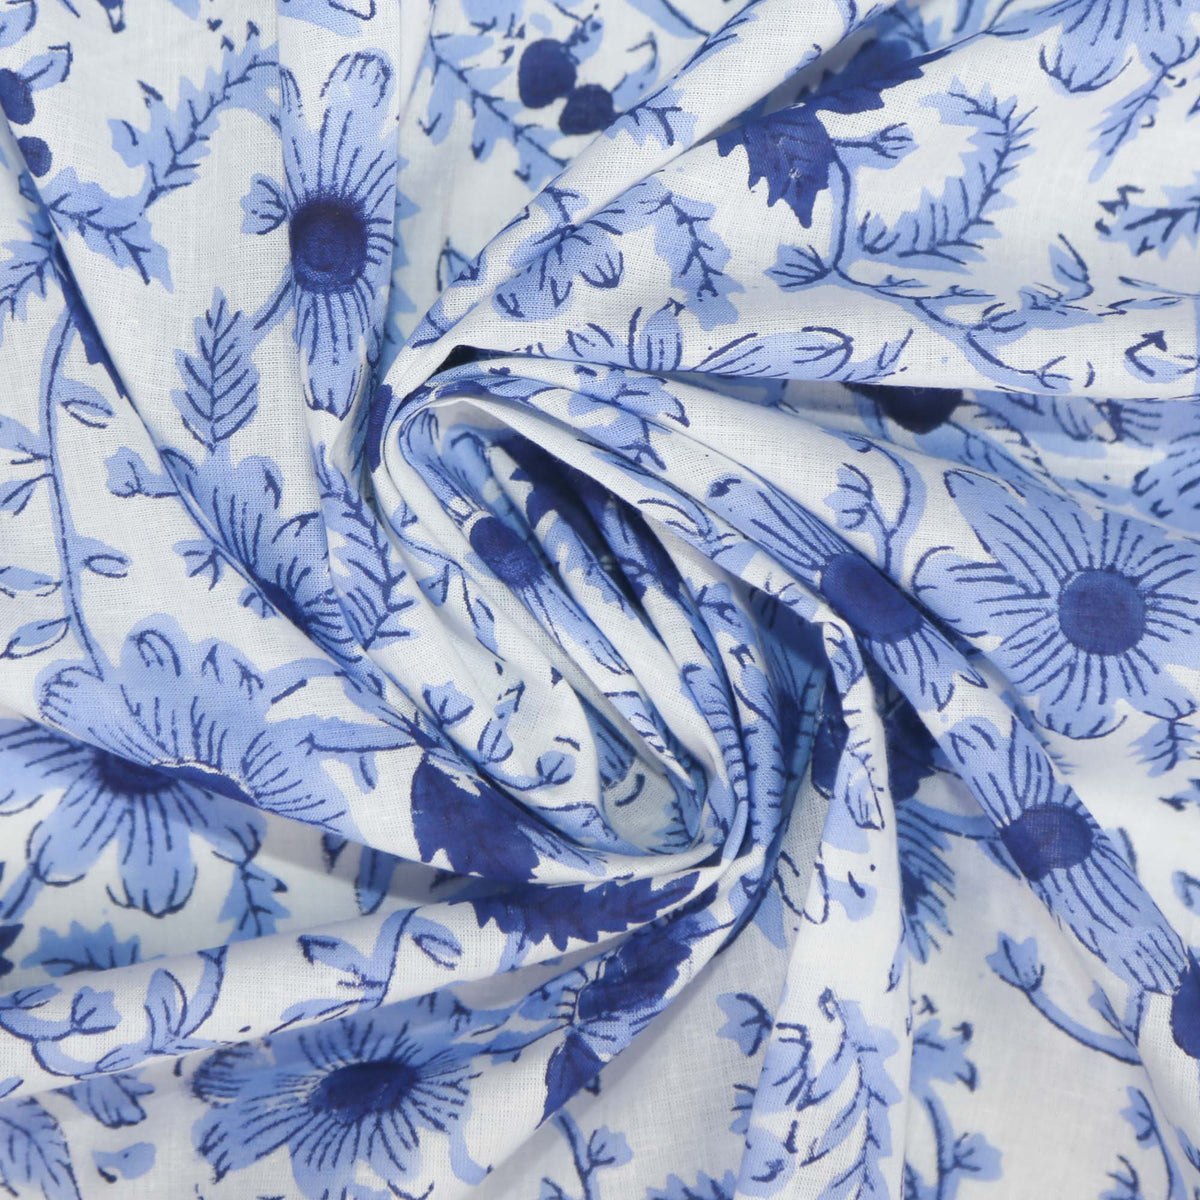 Block Print Fabric - Sweet Blue Garden (Design 443)